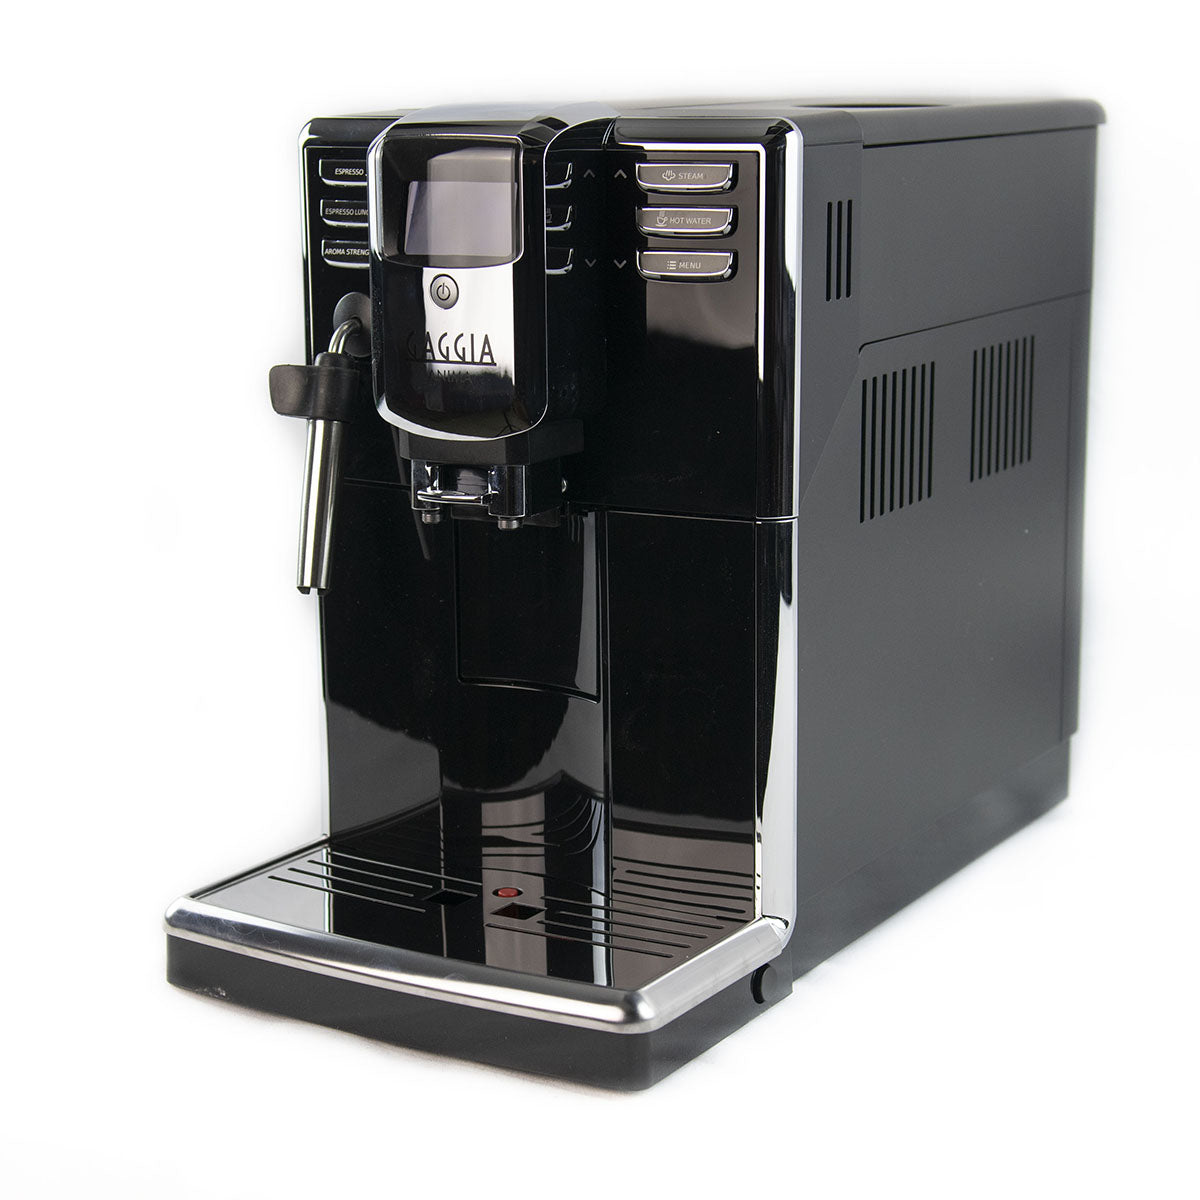 Gaggia Anima Super-Automatic Espresso Machine